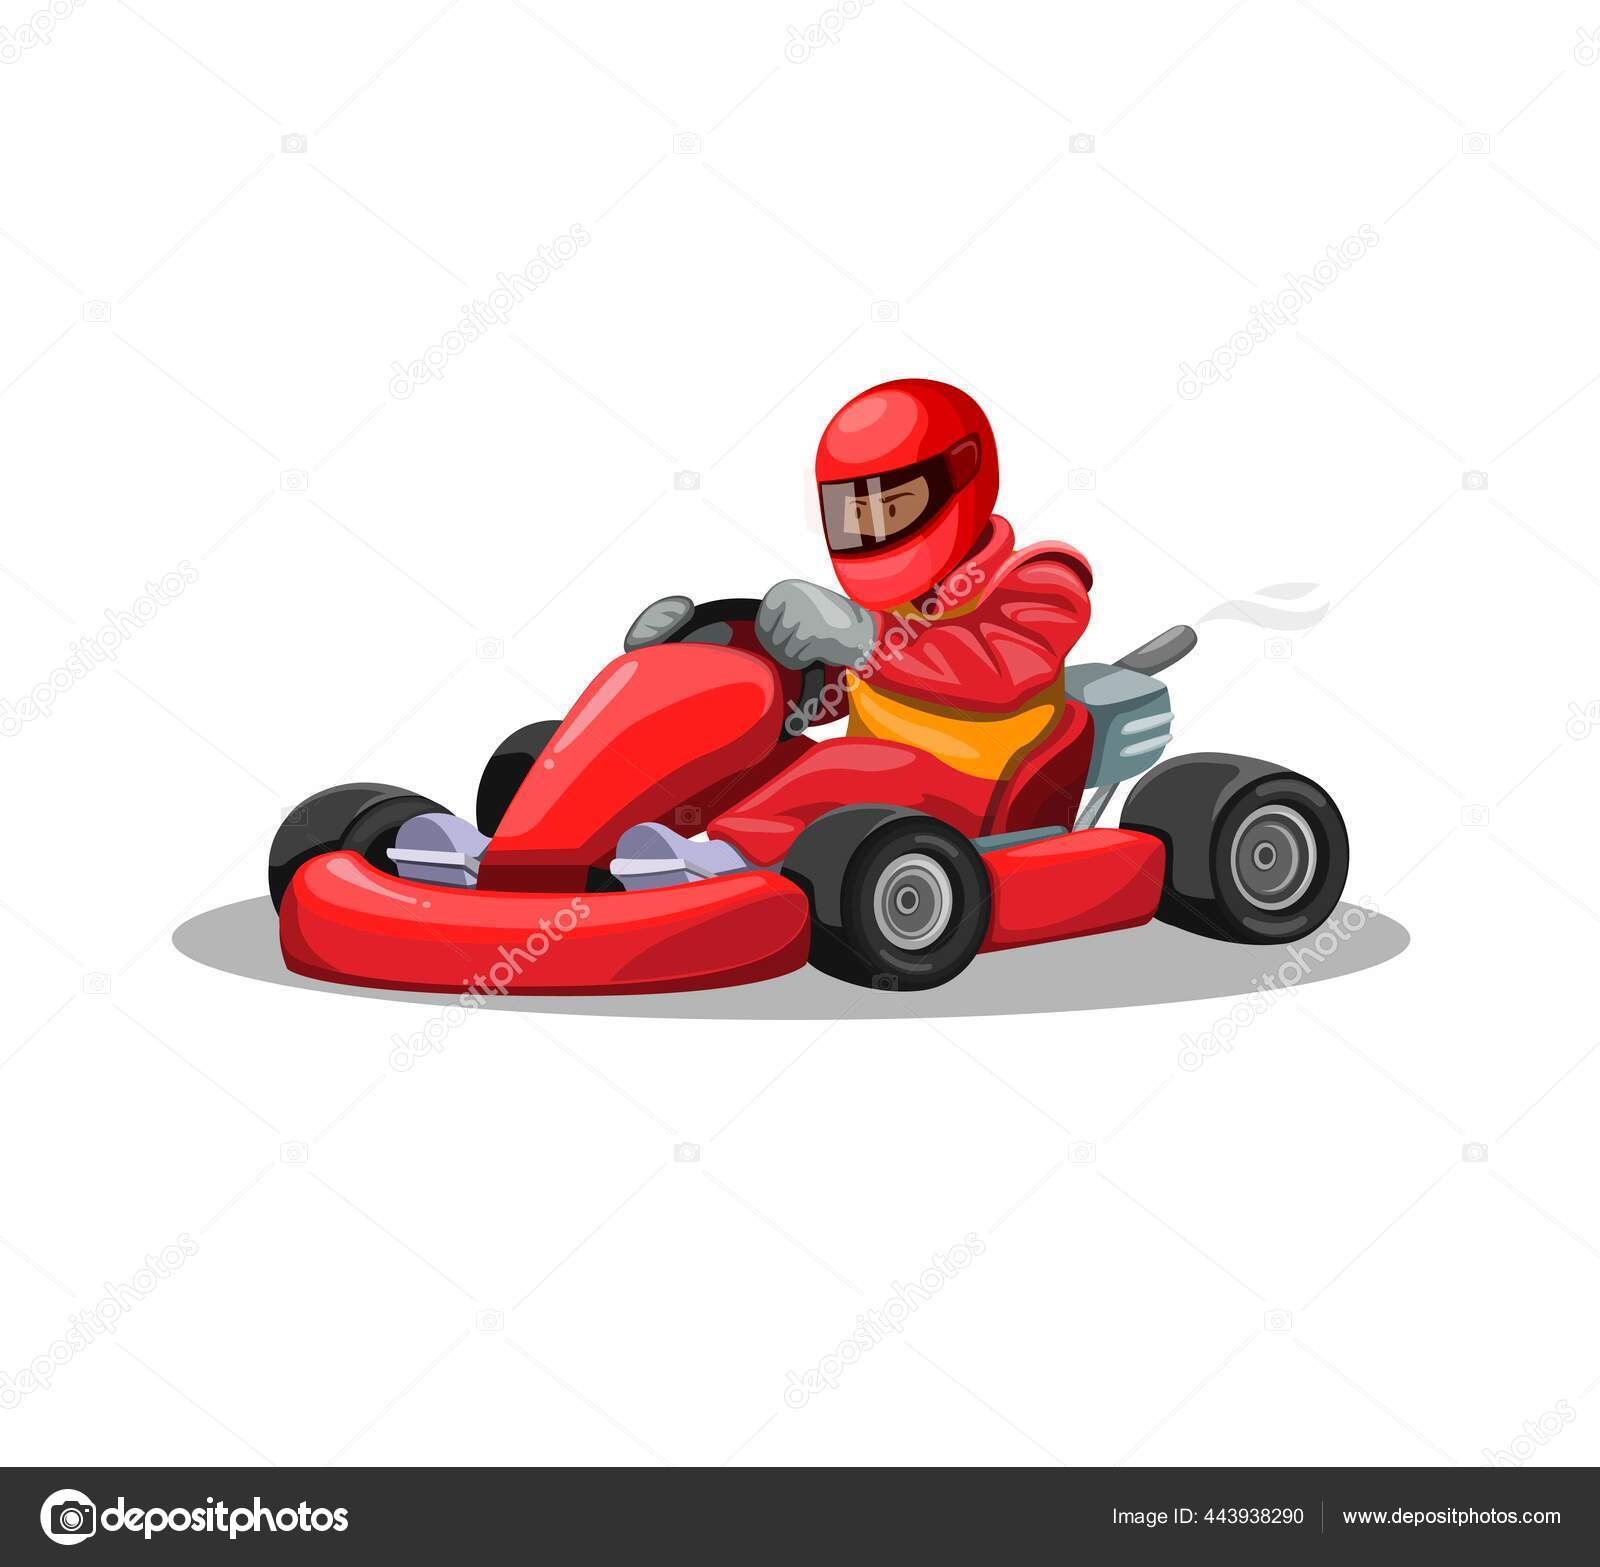 Corrida de Kart, Kart, Caráter, Personagem de desenho animado